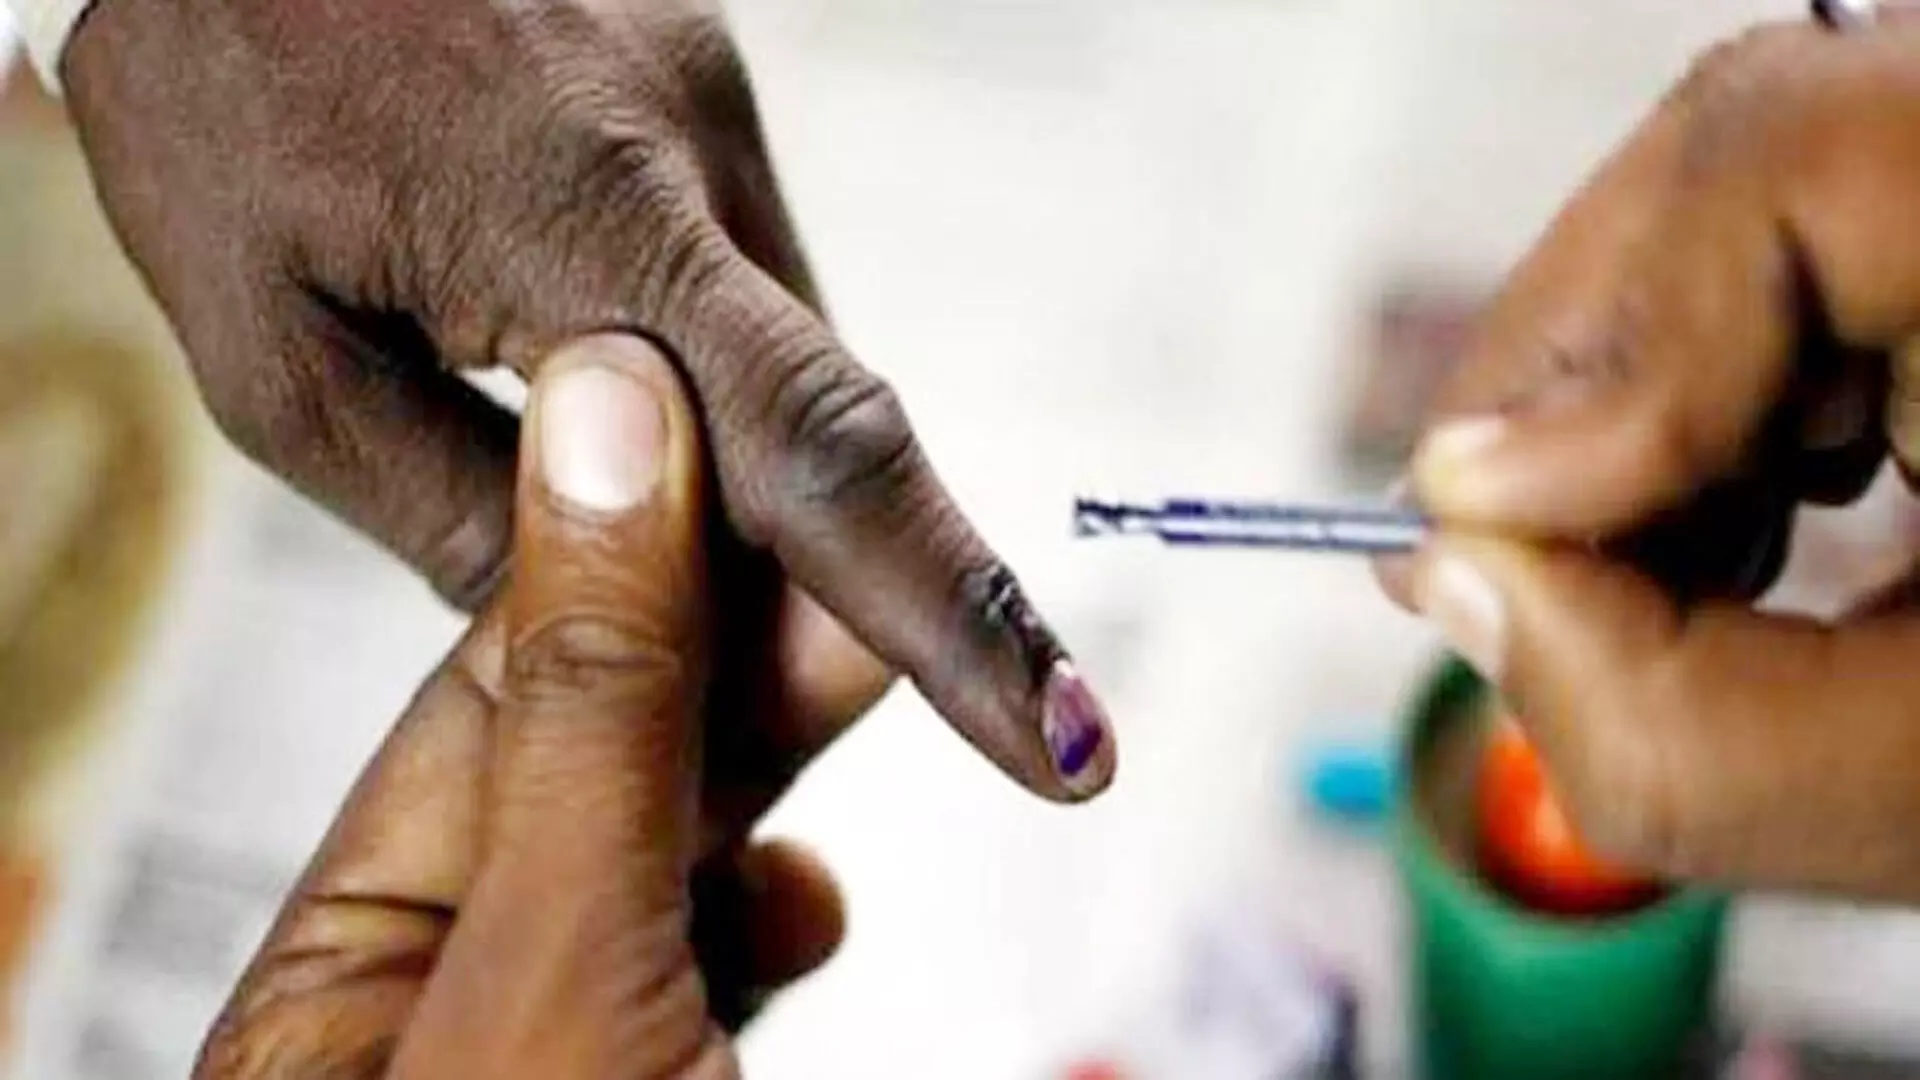 सुगम सहज सुरक्षित मतदान के लिए निर्वाचन विभाग की पहल 275 सहायक मतदान केन्द्रों का किया